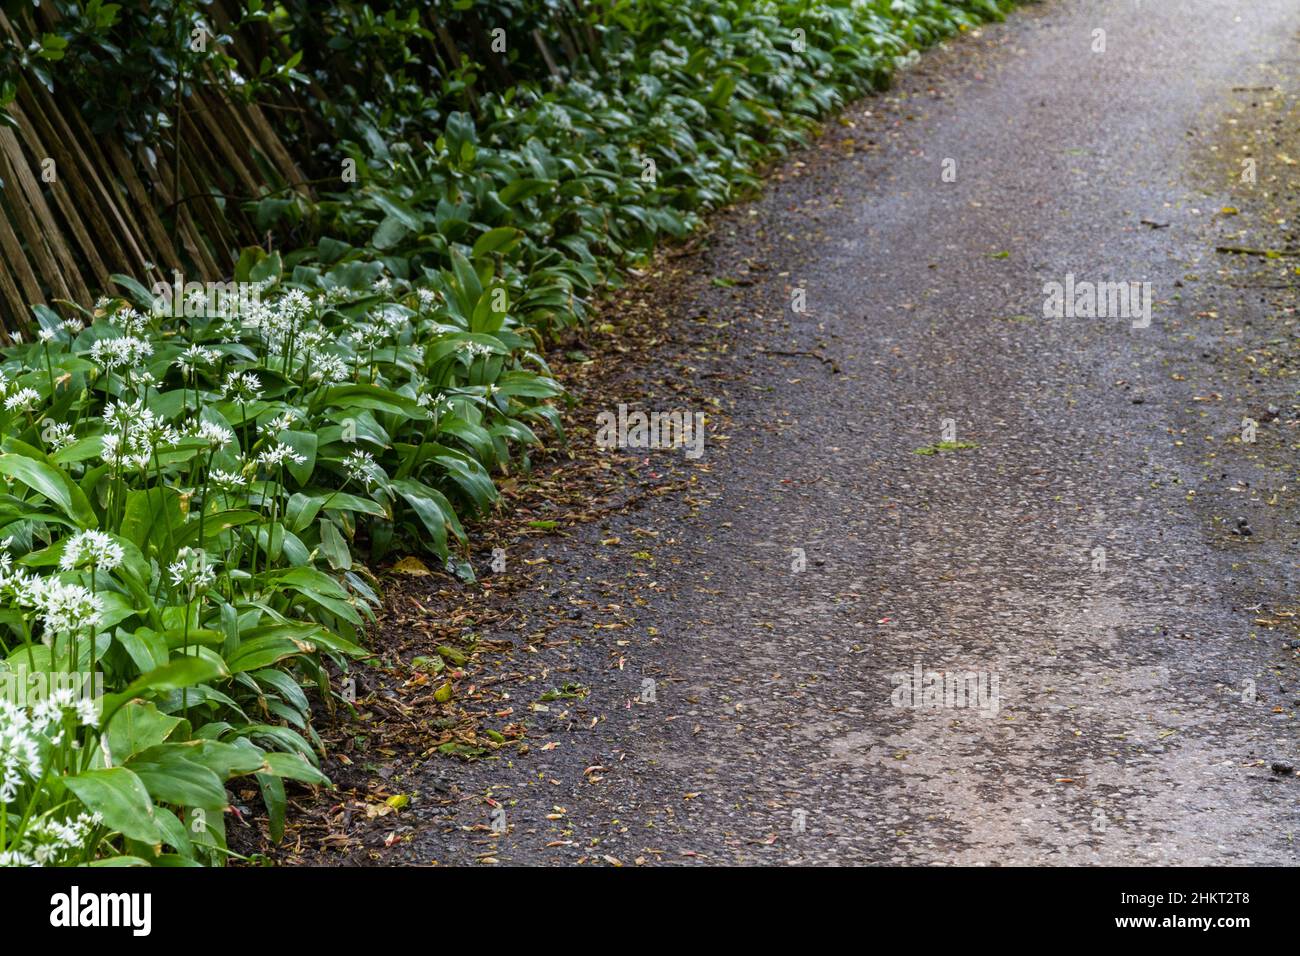 Grüner Bärlauch oder Ramsons, die neben der Straße oder der Straße wachsen, mit weißen Blüten. Stockfoto